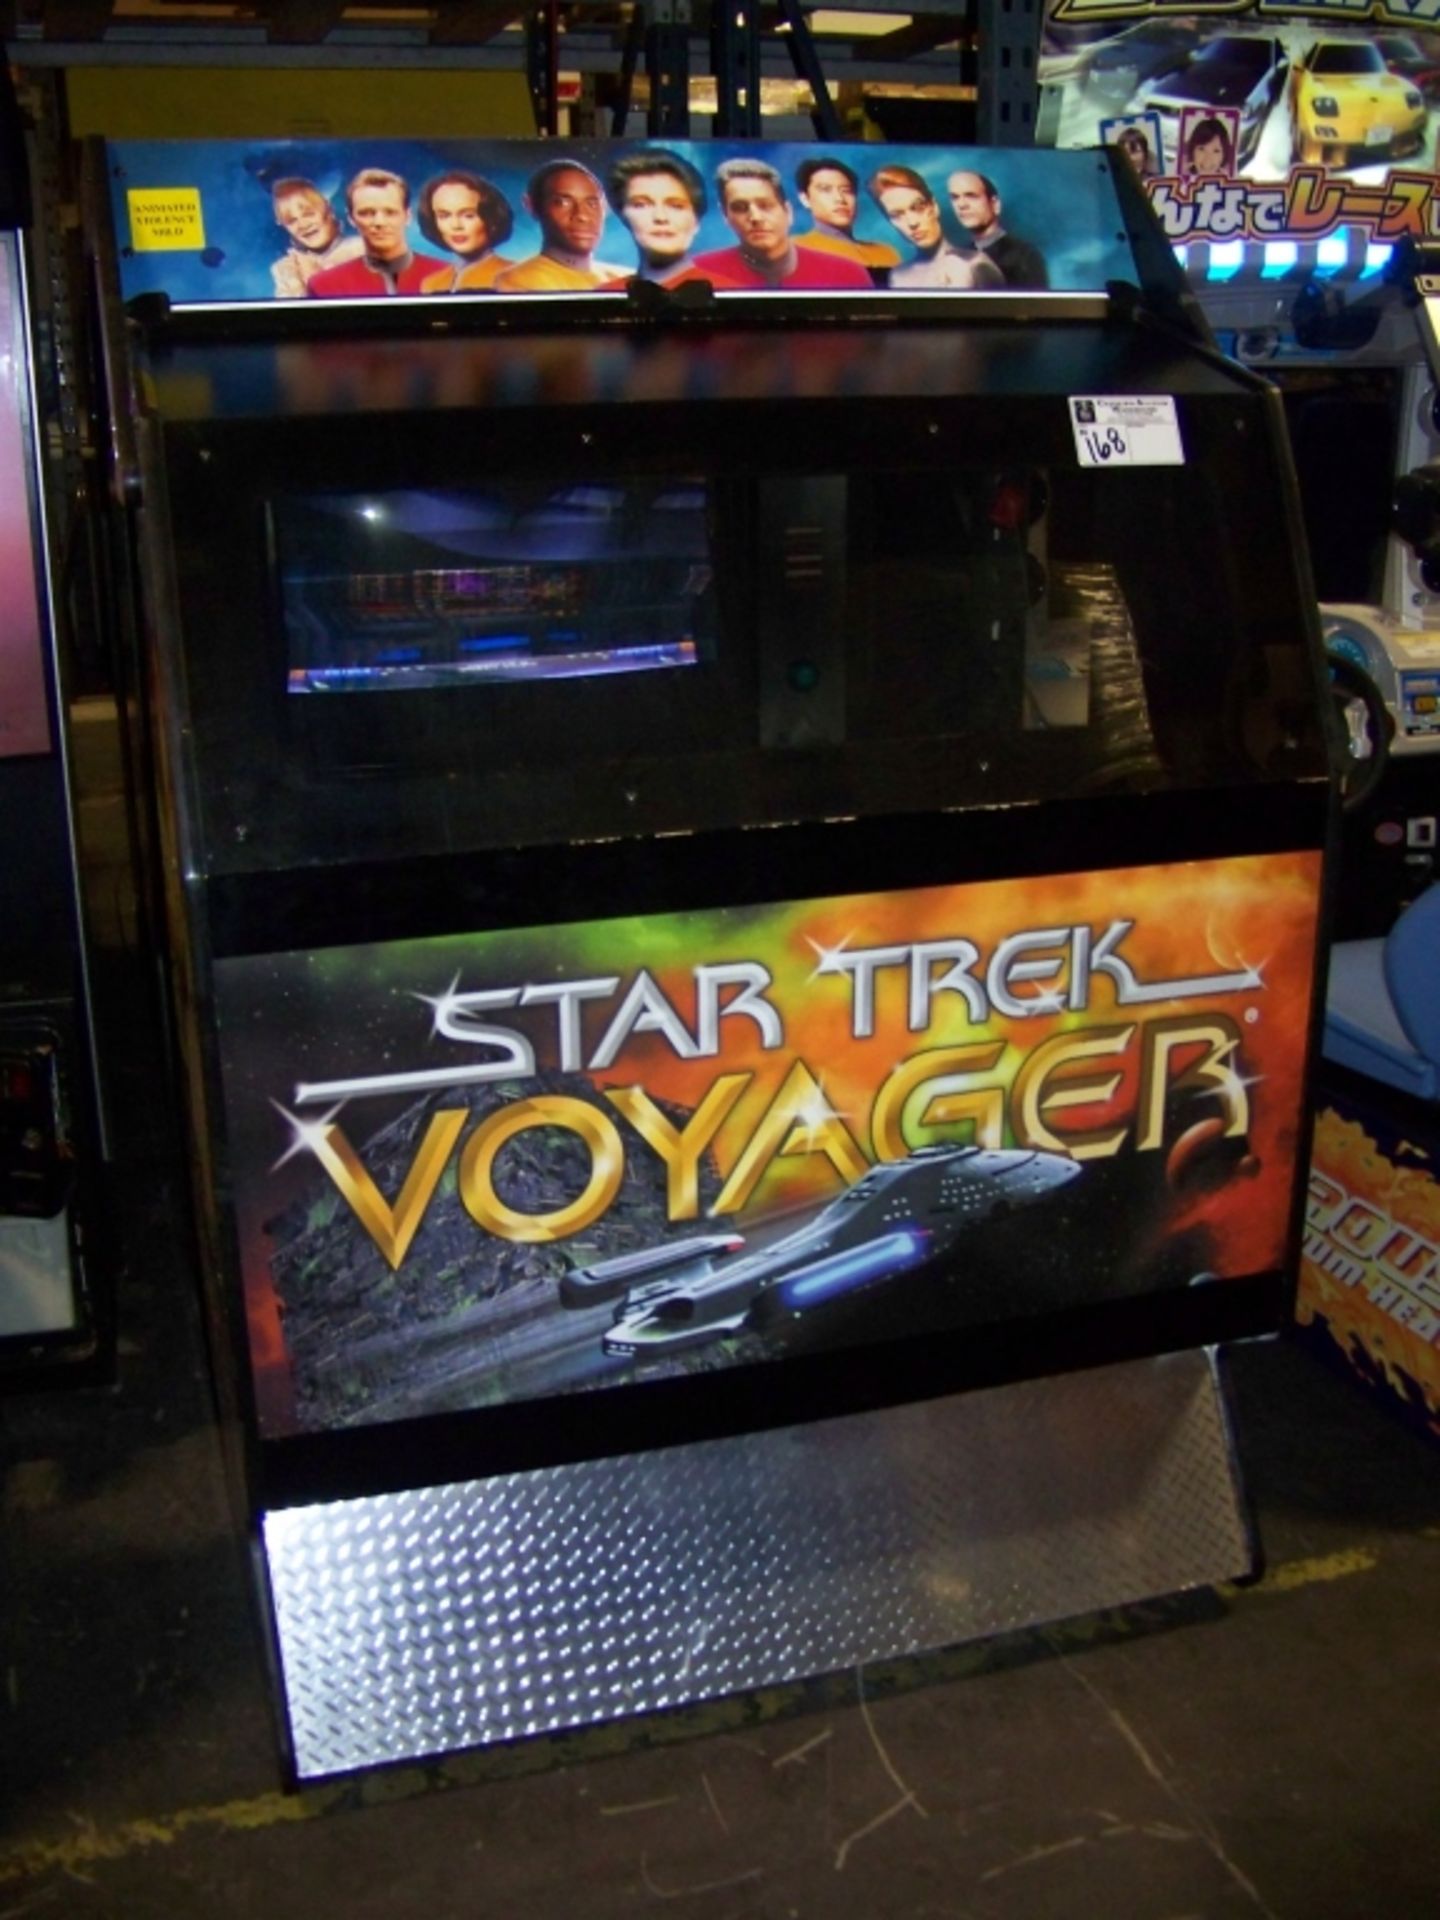 STAR TREK VOYAGER 39" DX ENVIRONMENTAL ARCADE GAME - Image 3 of 3